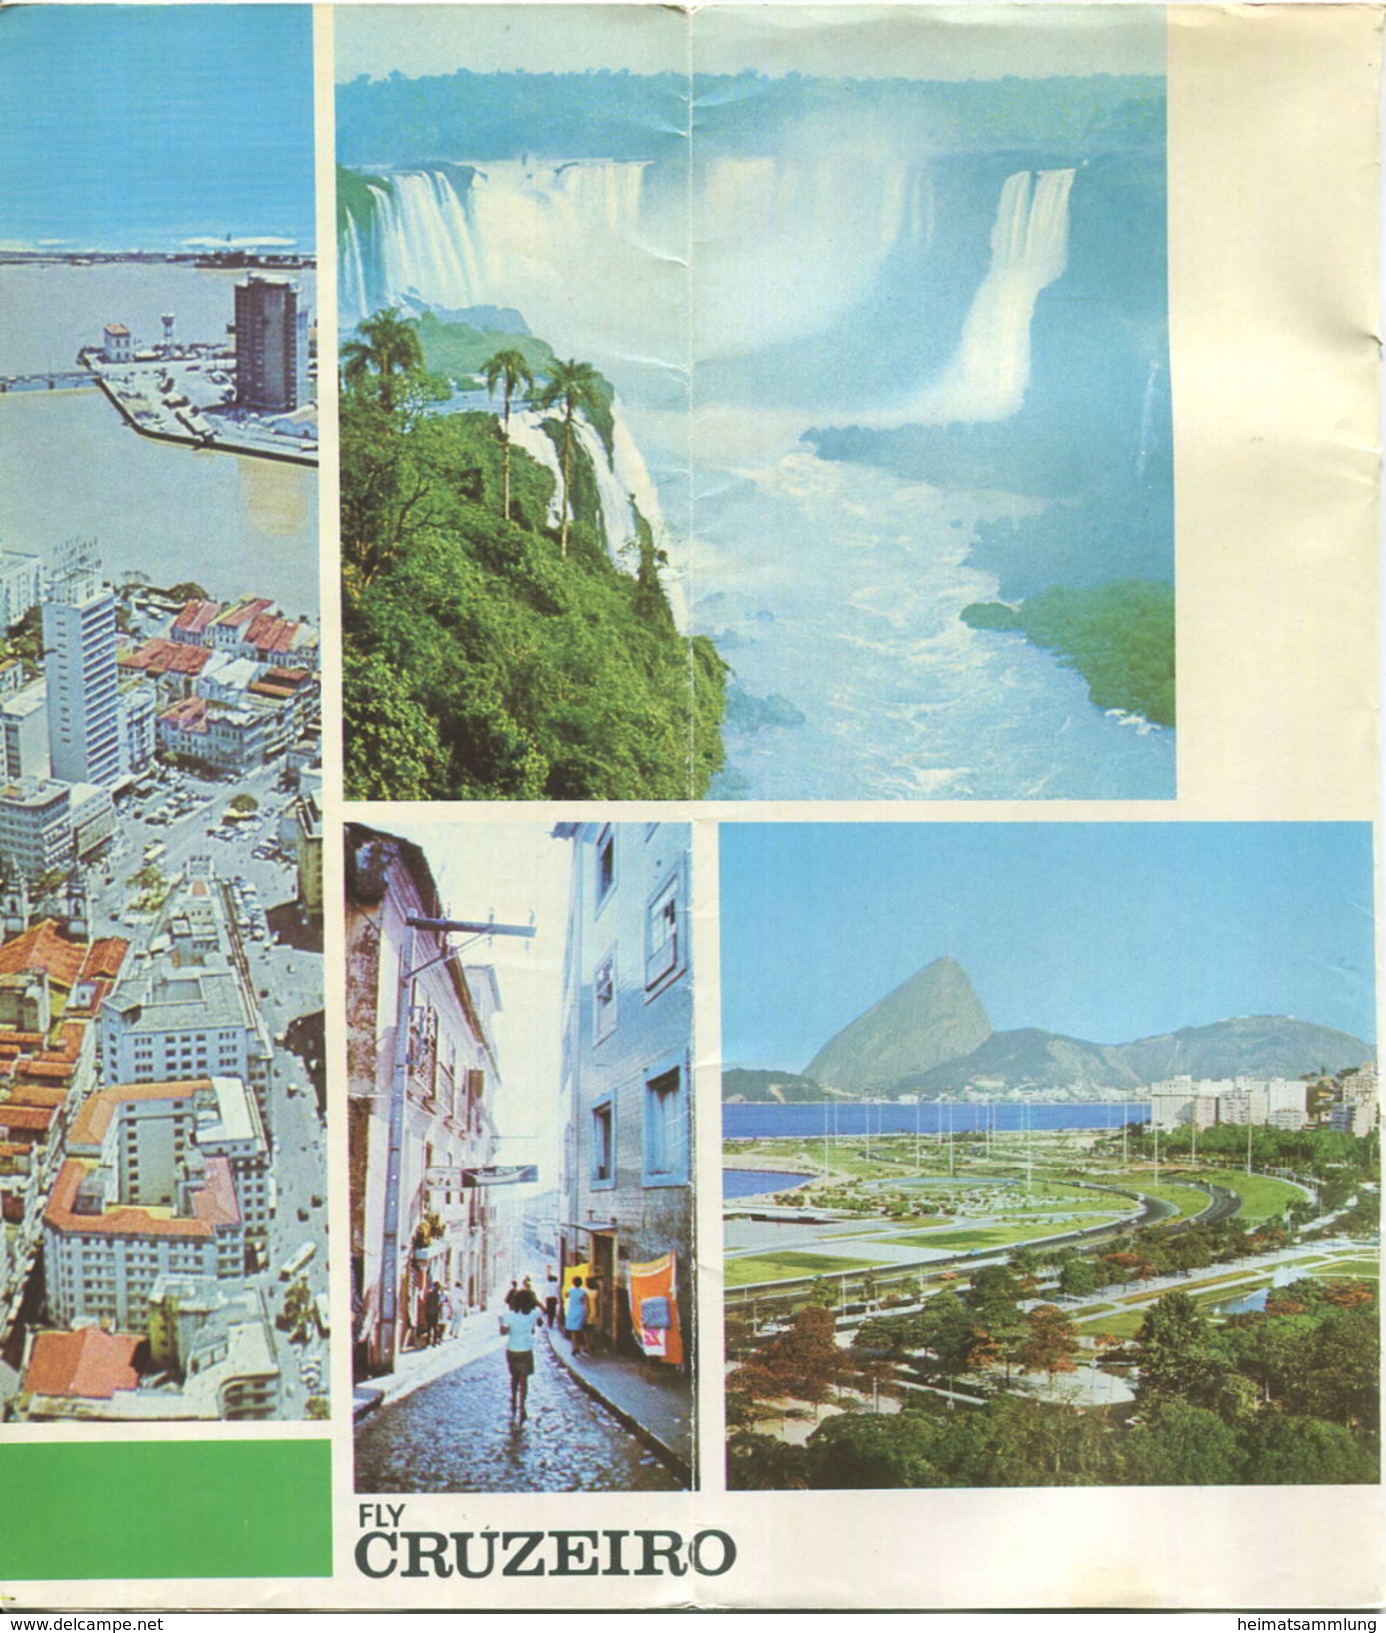 Brasil - Timetable Fly Cruzeiro 1970 - 8 Seiten Mit 10 Abbildungen - Flugdaten - World